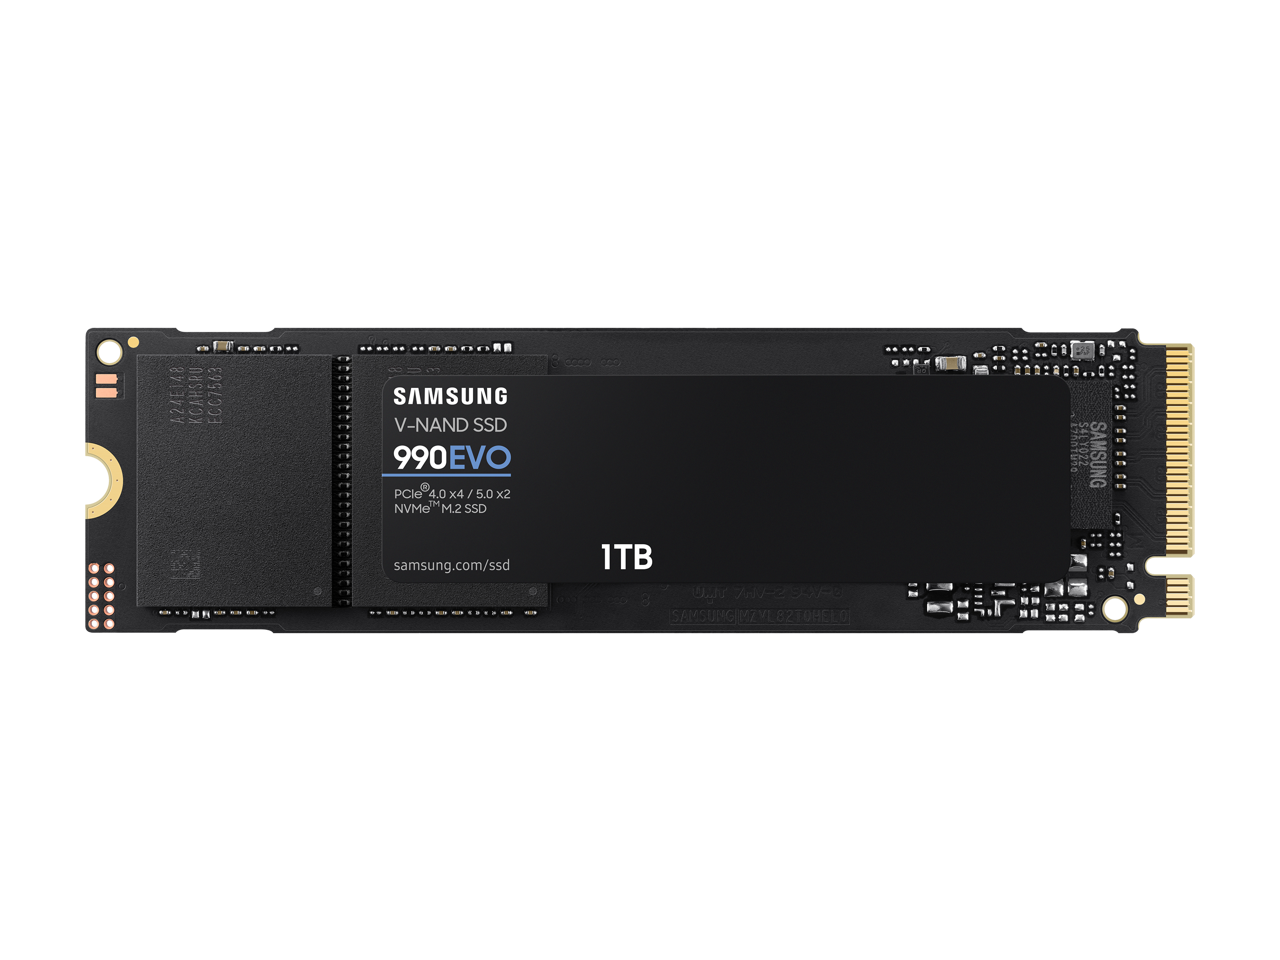 1TB SAMSUNG SSD 990 EVO PCIe 5.0 M.2 2280 $75 + Free Shipping